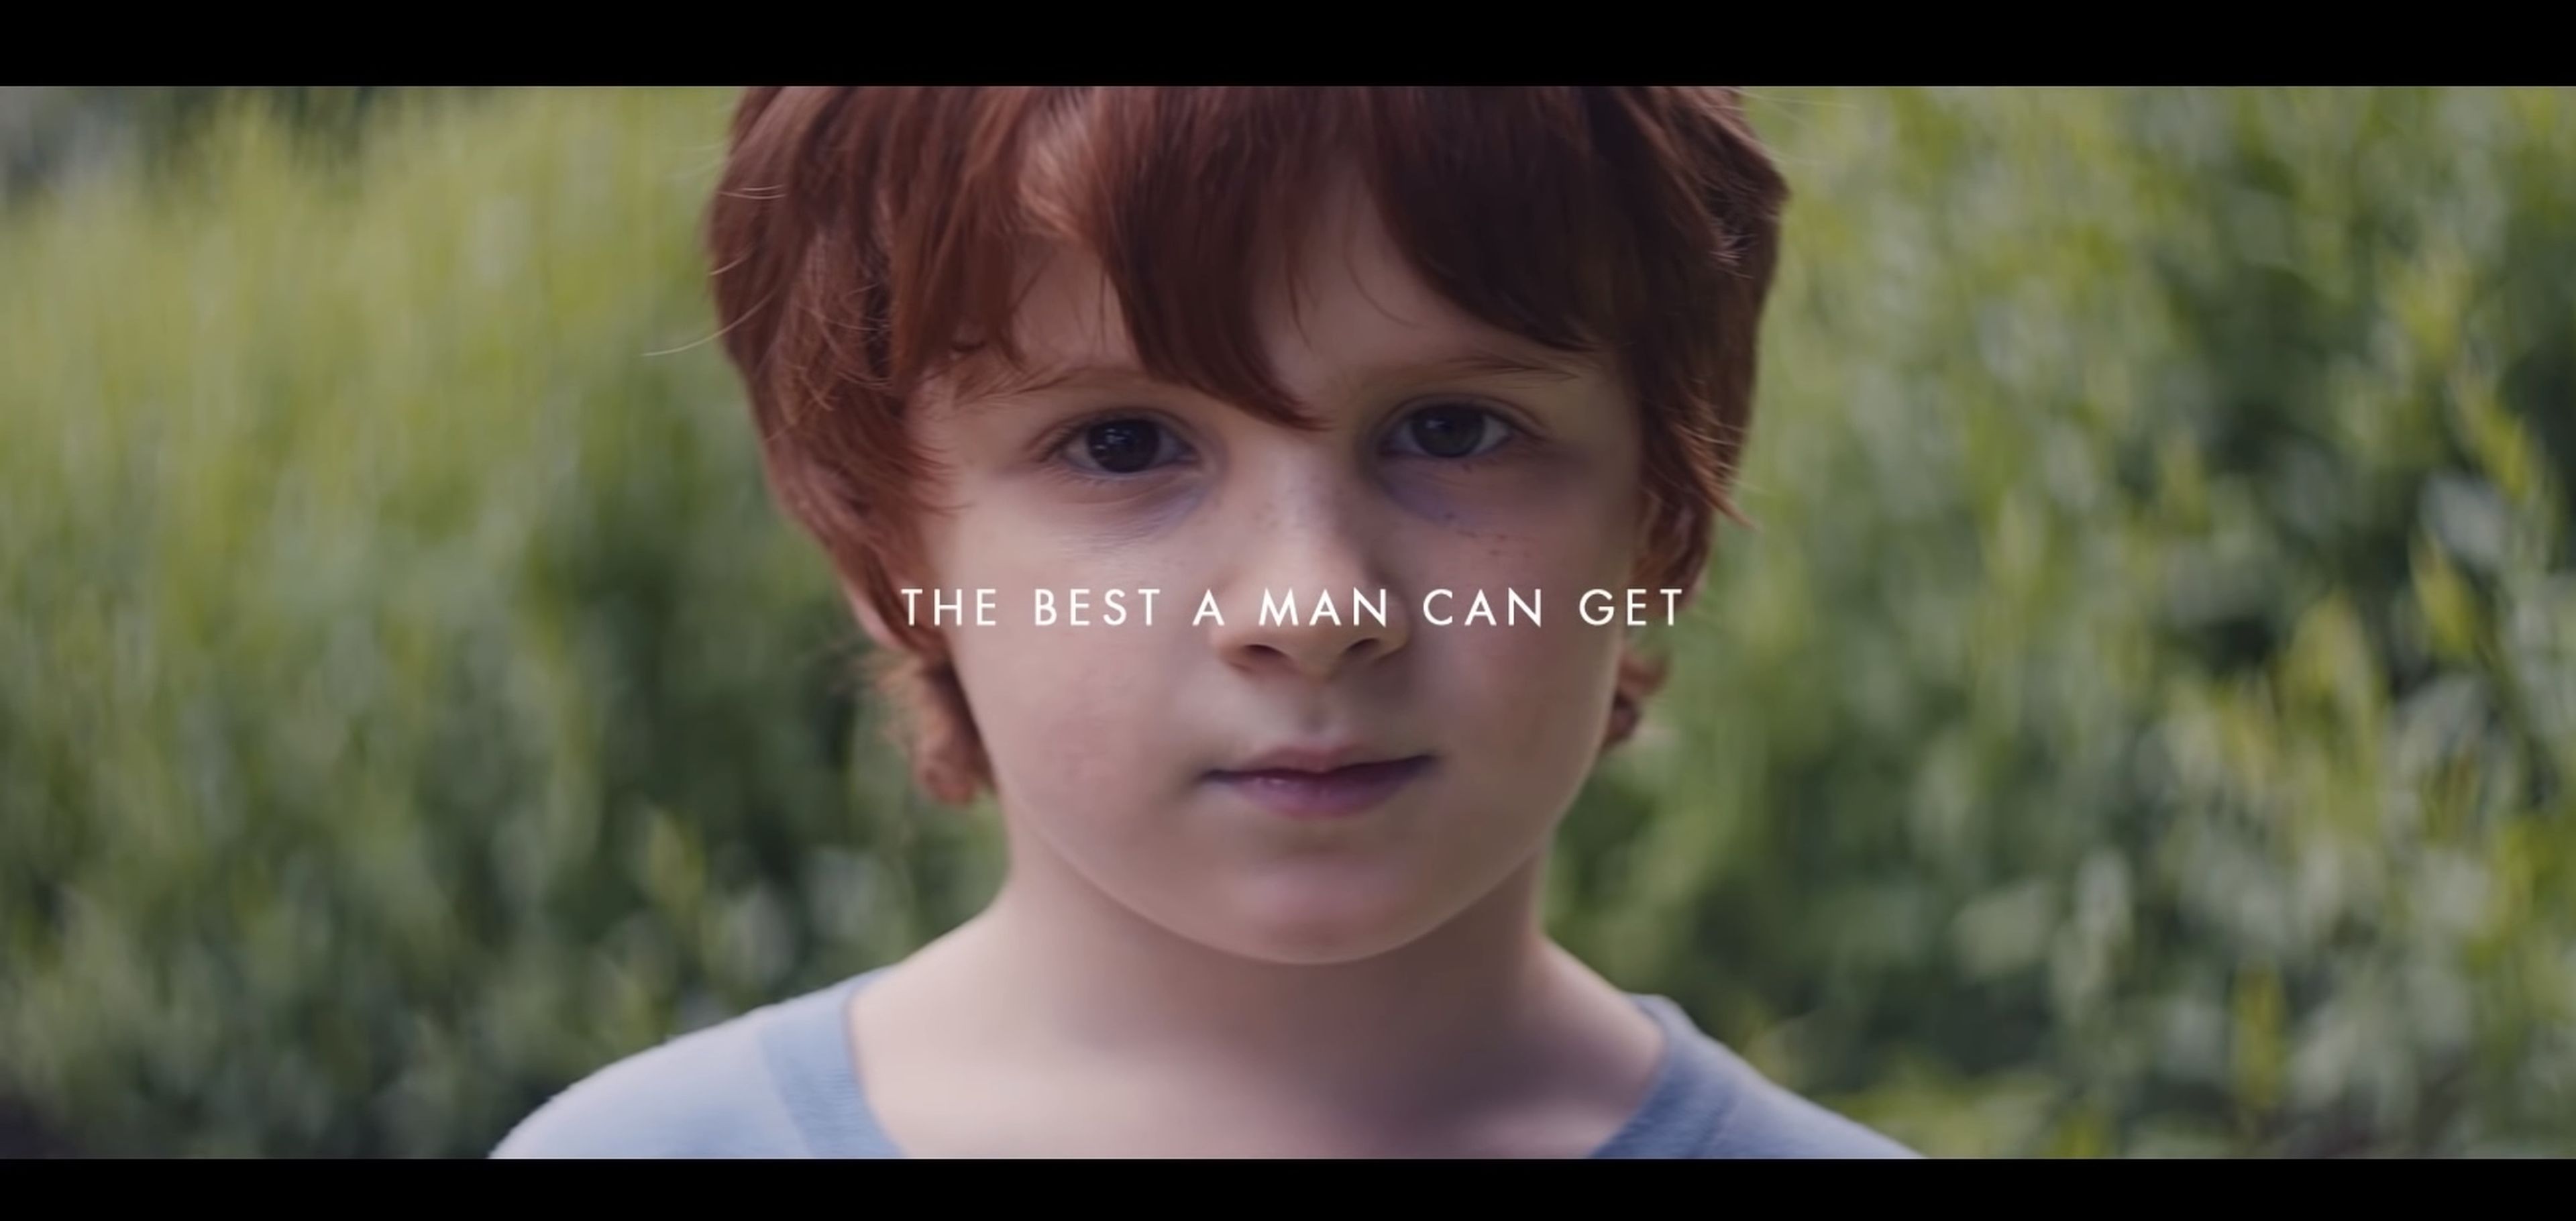 Captura de pantalla del nuevo anuncio de Gillette.